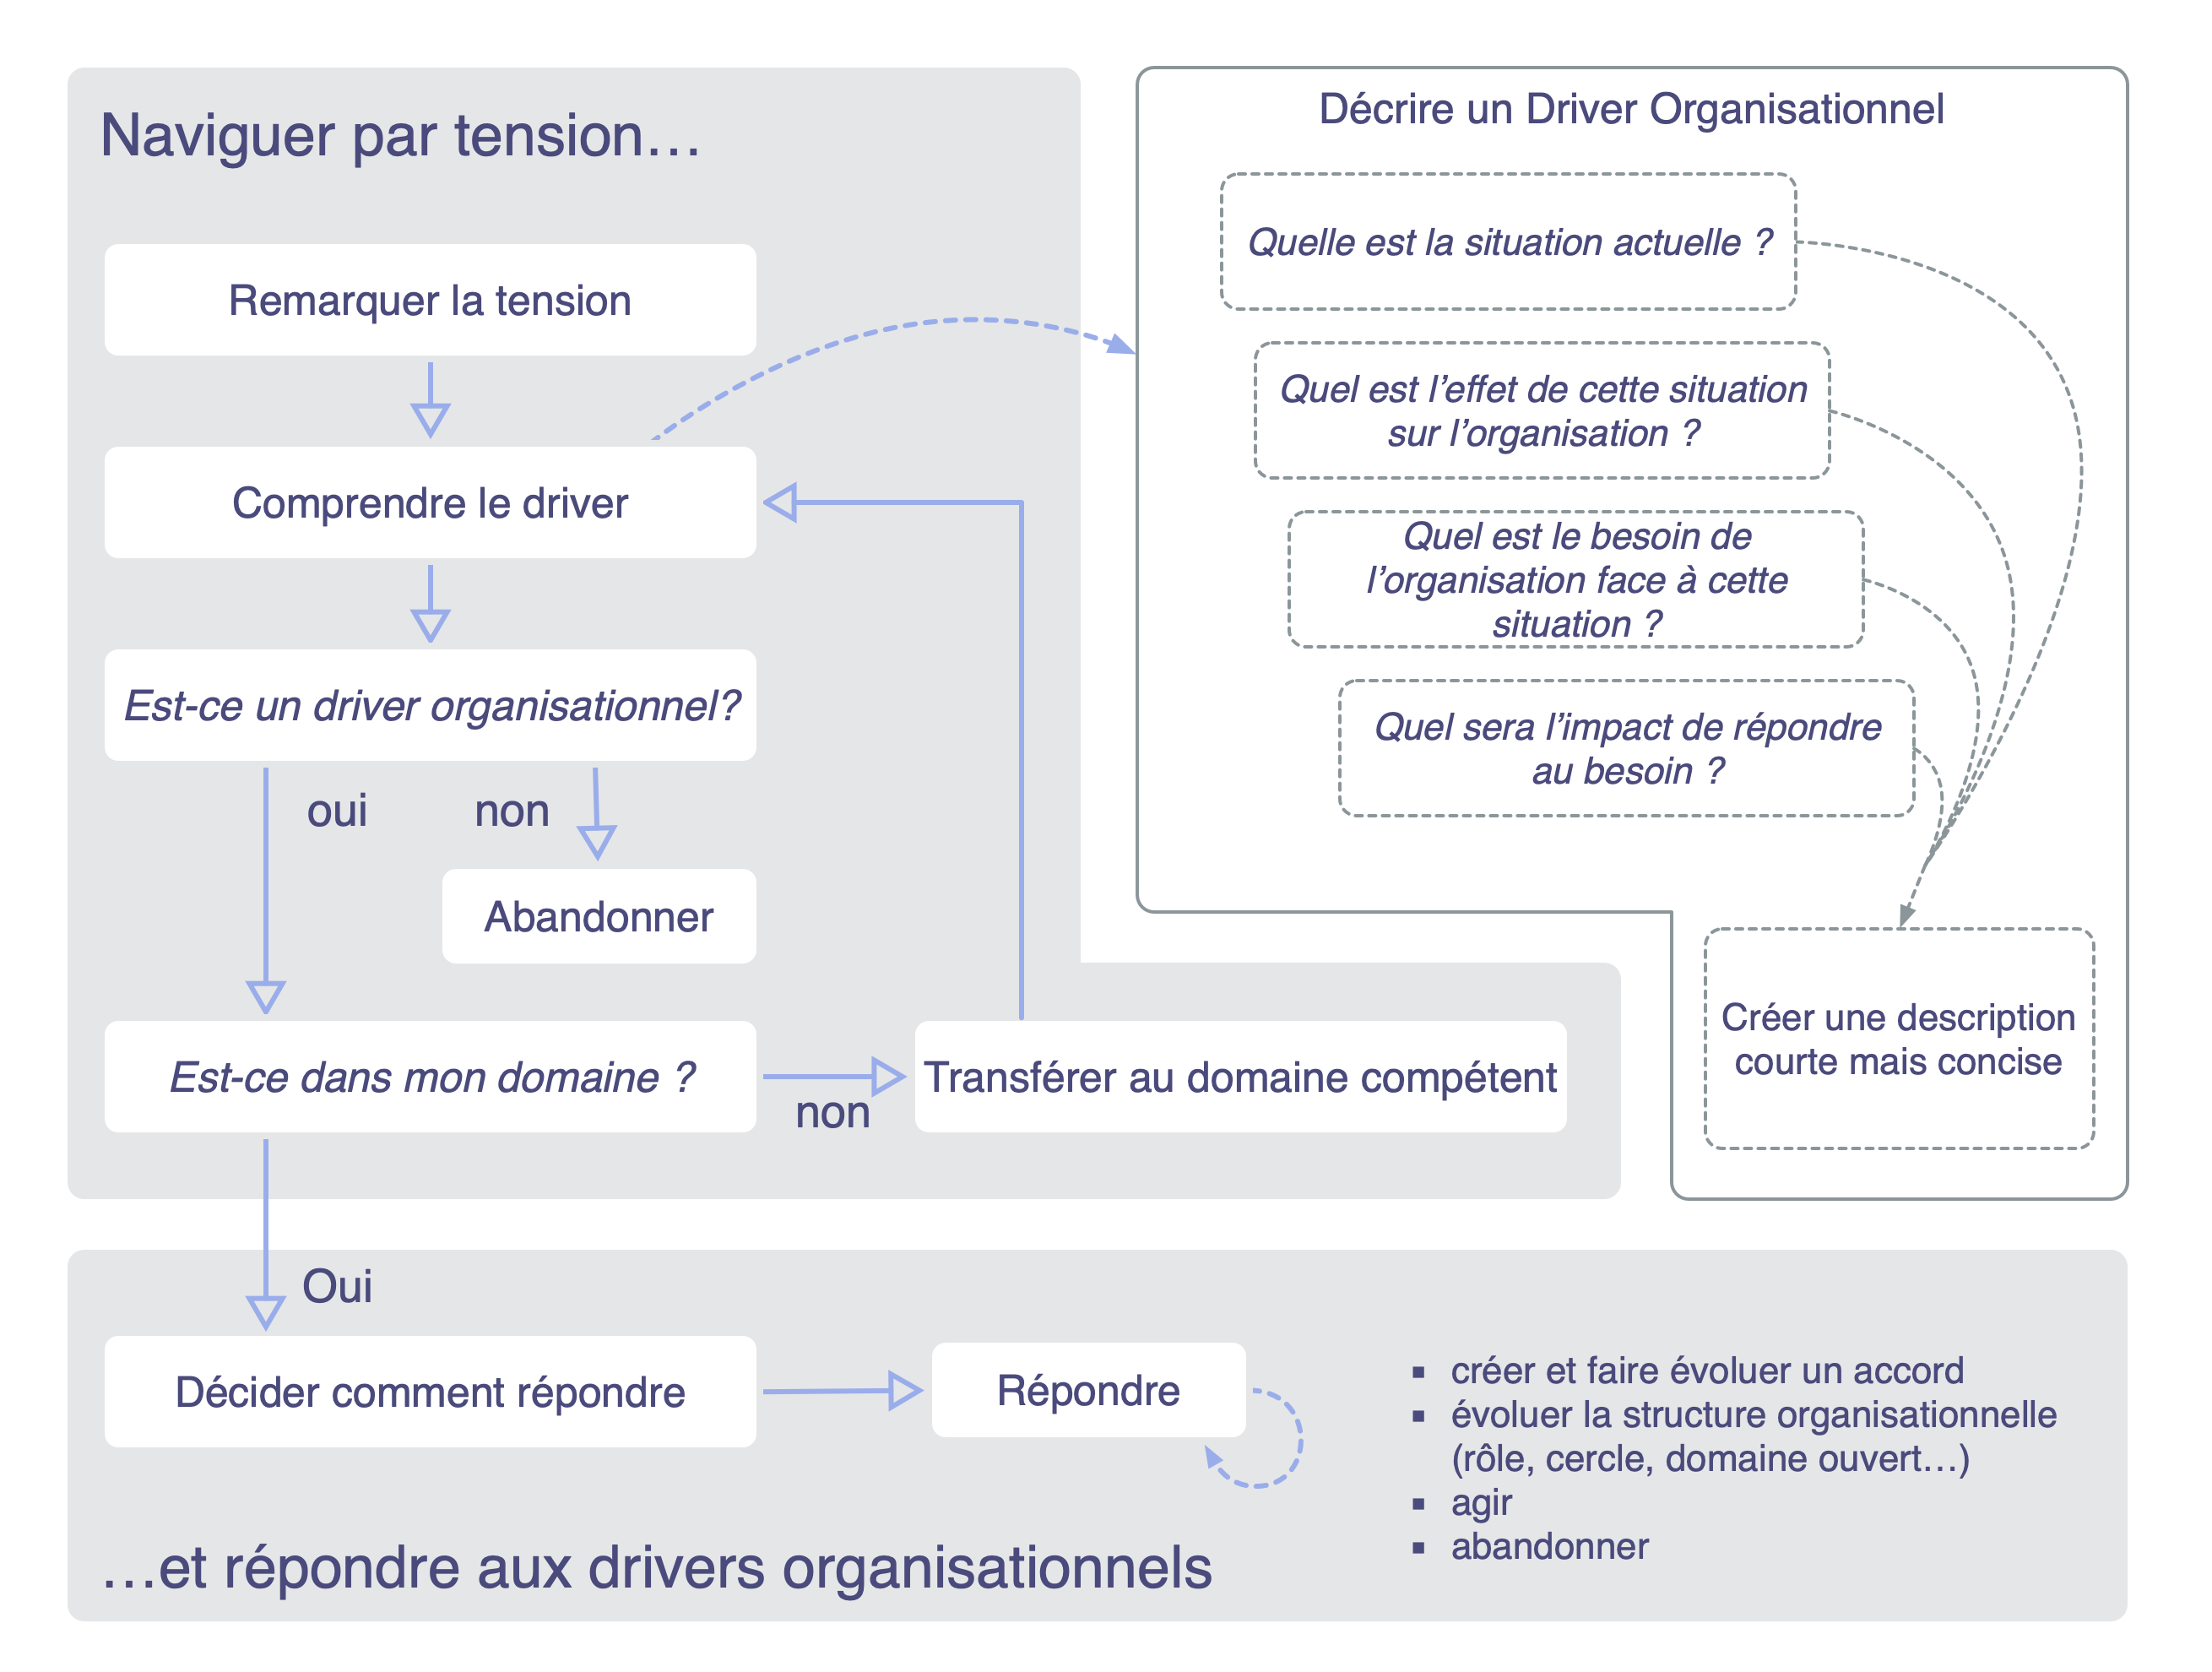 Naviguer par tension, décrire les drivers organisationnels, Répondre aux drivers organisationnels